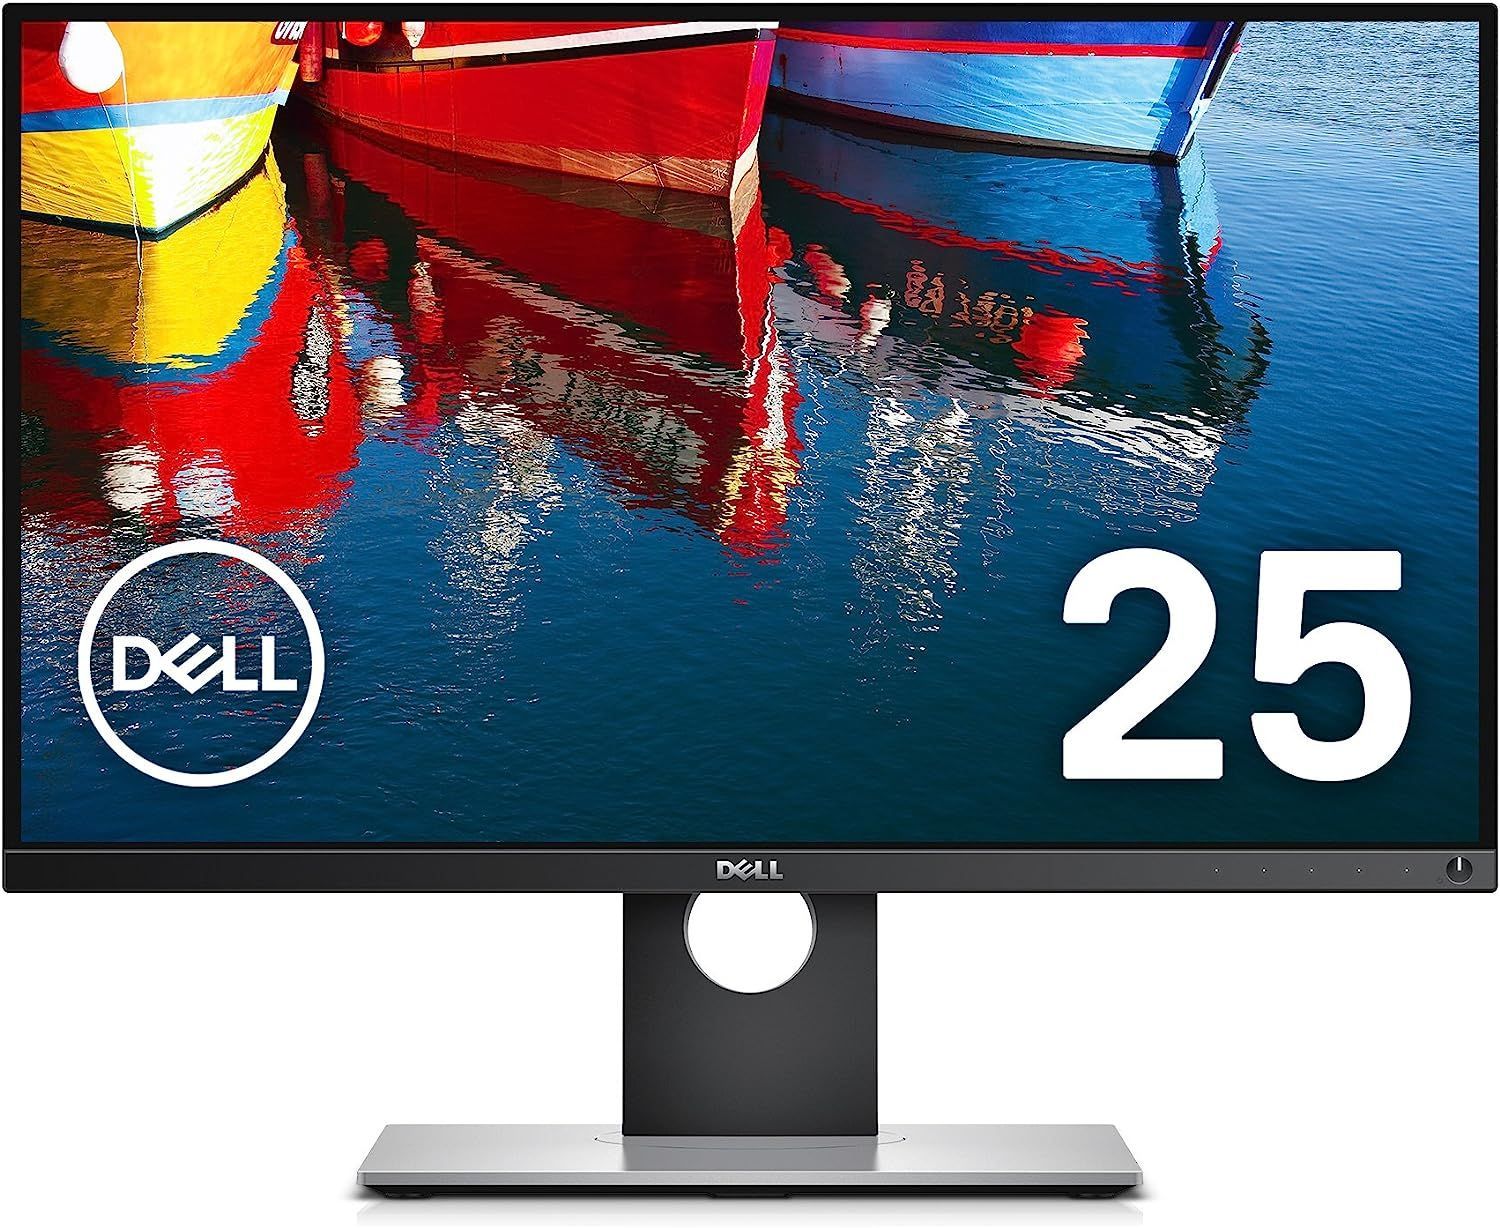 Dell デジタルハイエンドシリーズ UP2516D 25インチ プレミアムカラー